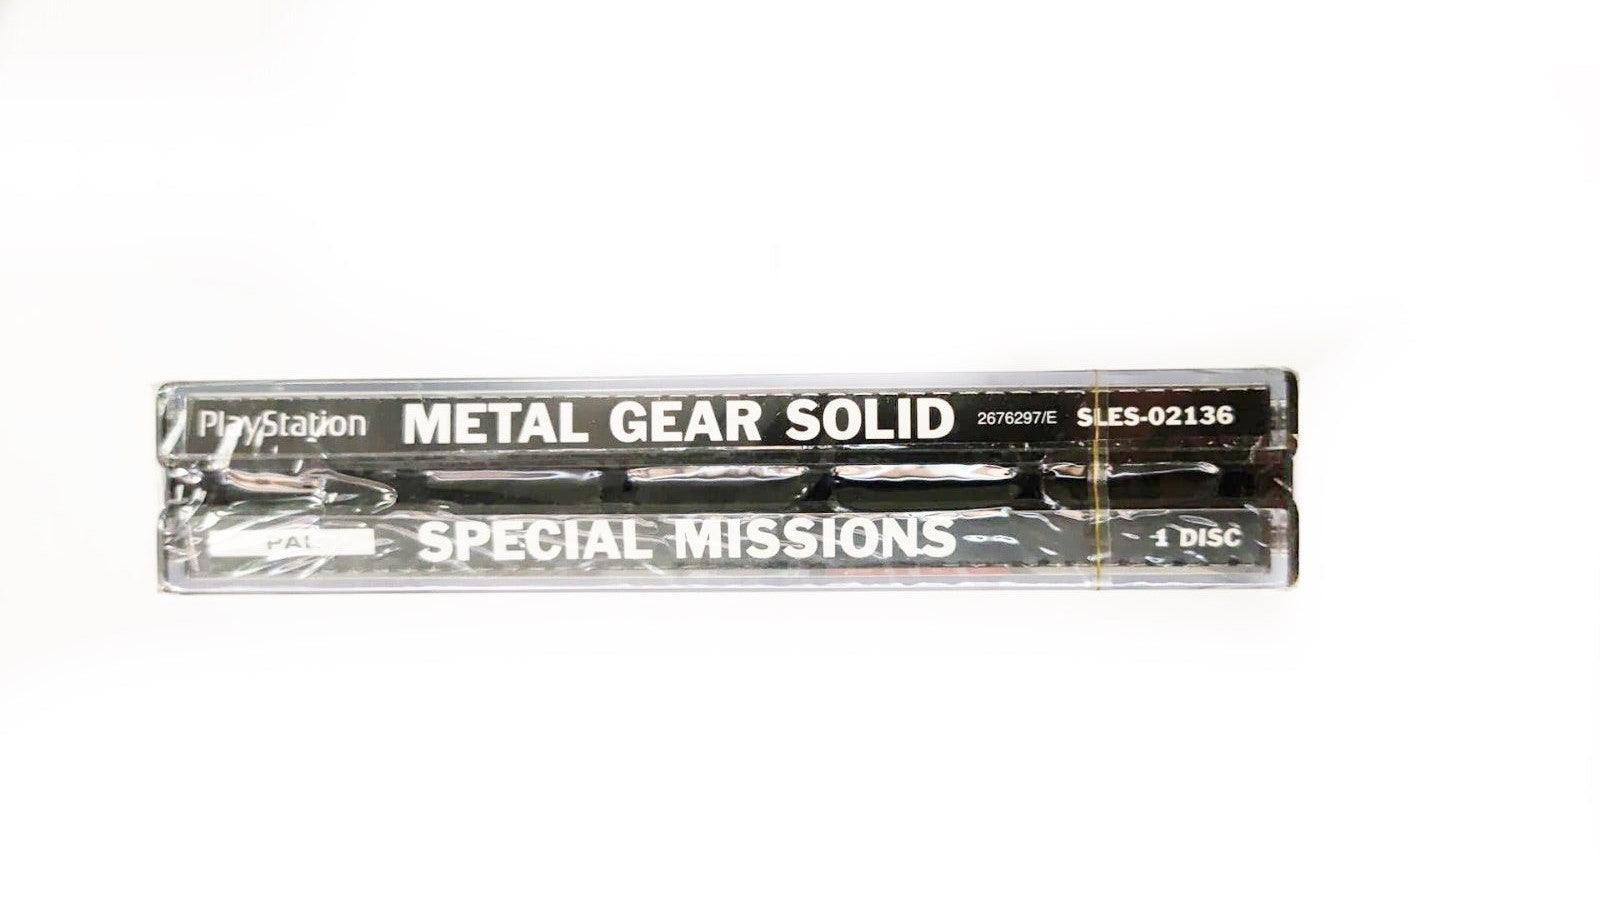 Videogioco - Metal Gear Solid VR Special Mission - Ps1 Edizione Box Italiano - METAL GEAR SOLID - [ITA] - Magic Dreams Store